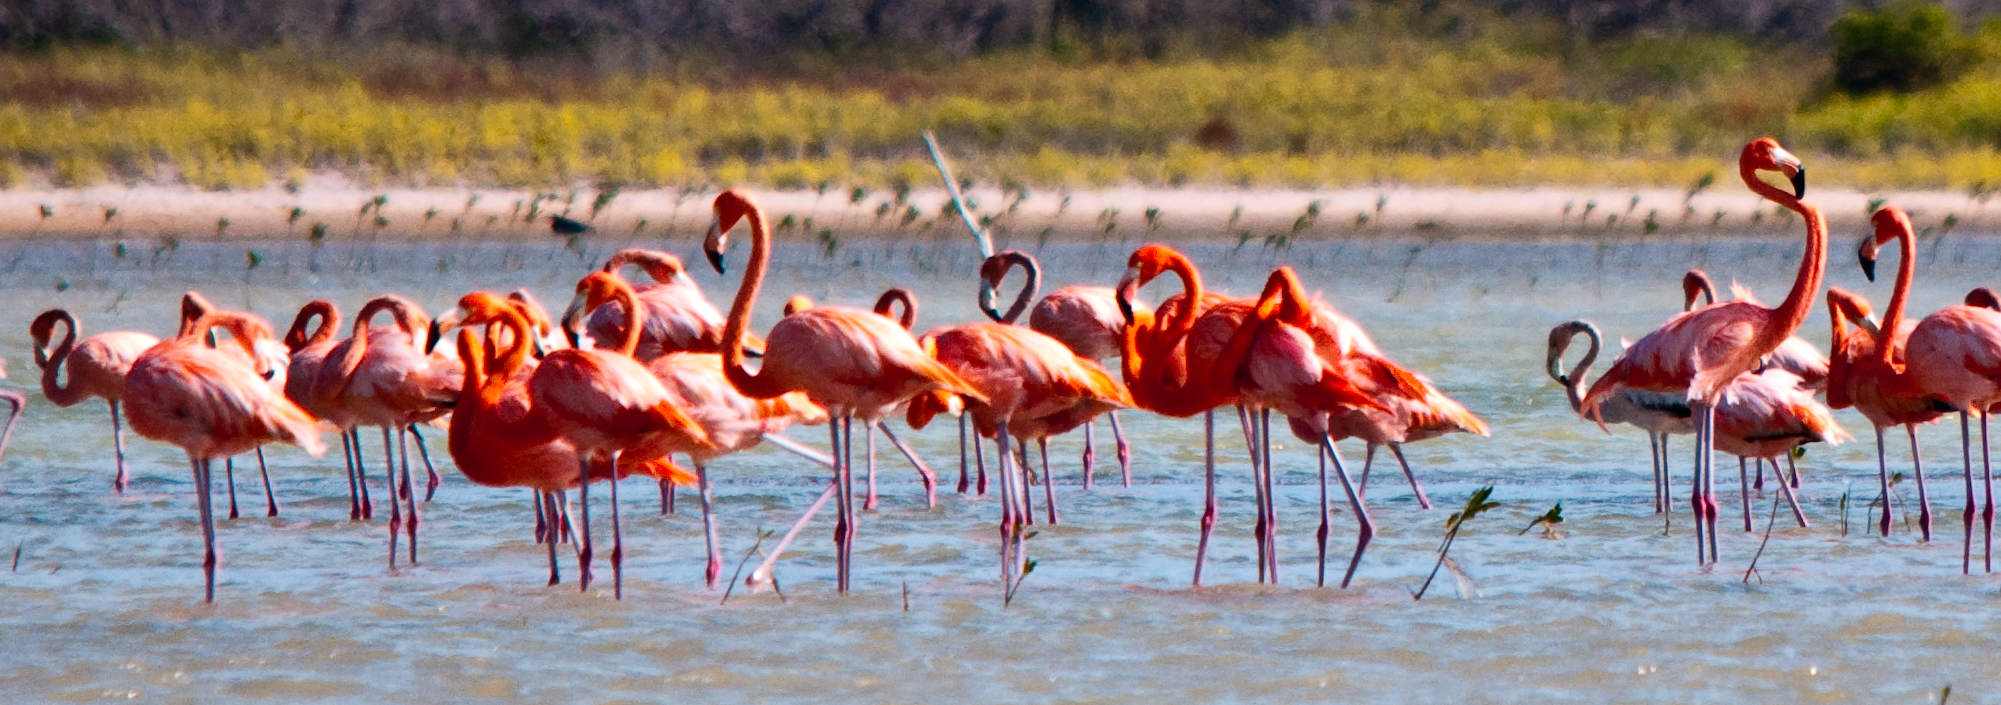 Dominikanische Republik, Südwesten, Barahona y Pedernales, Flamingos im Salzsee